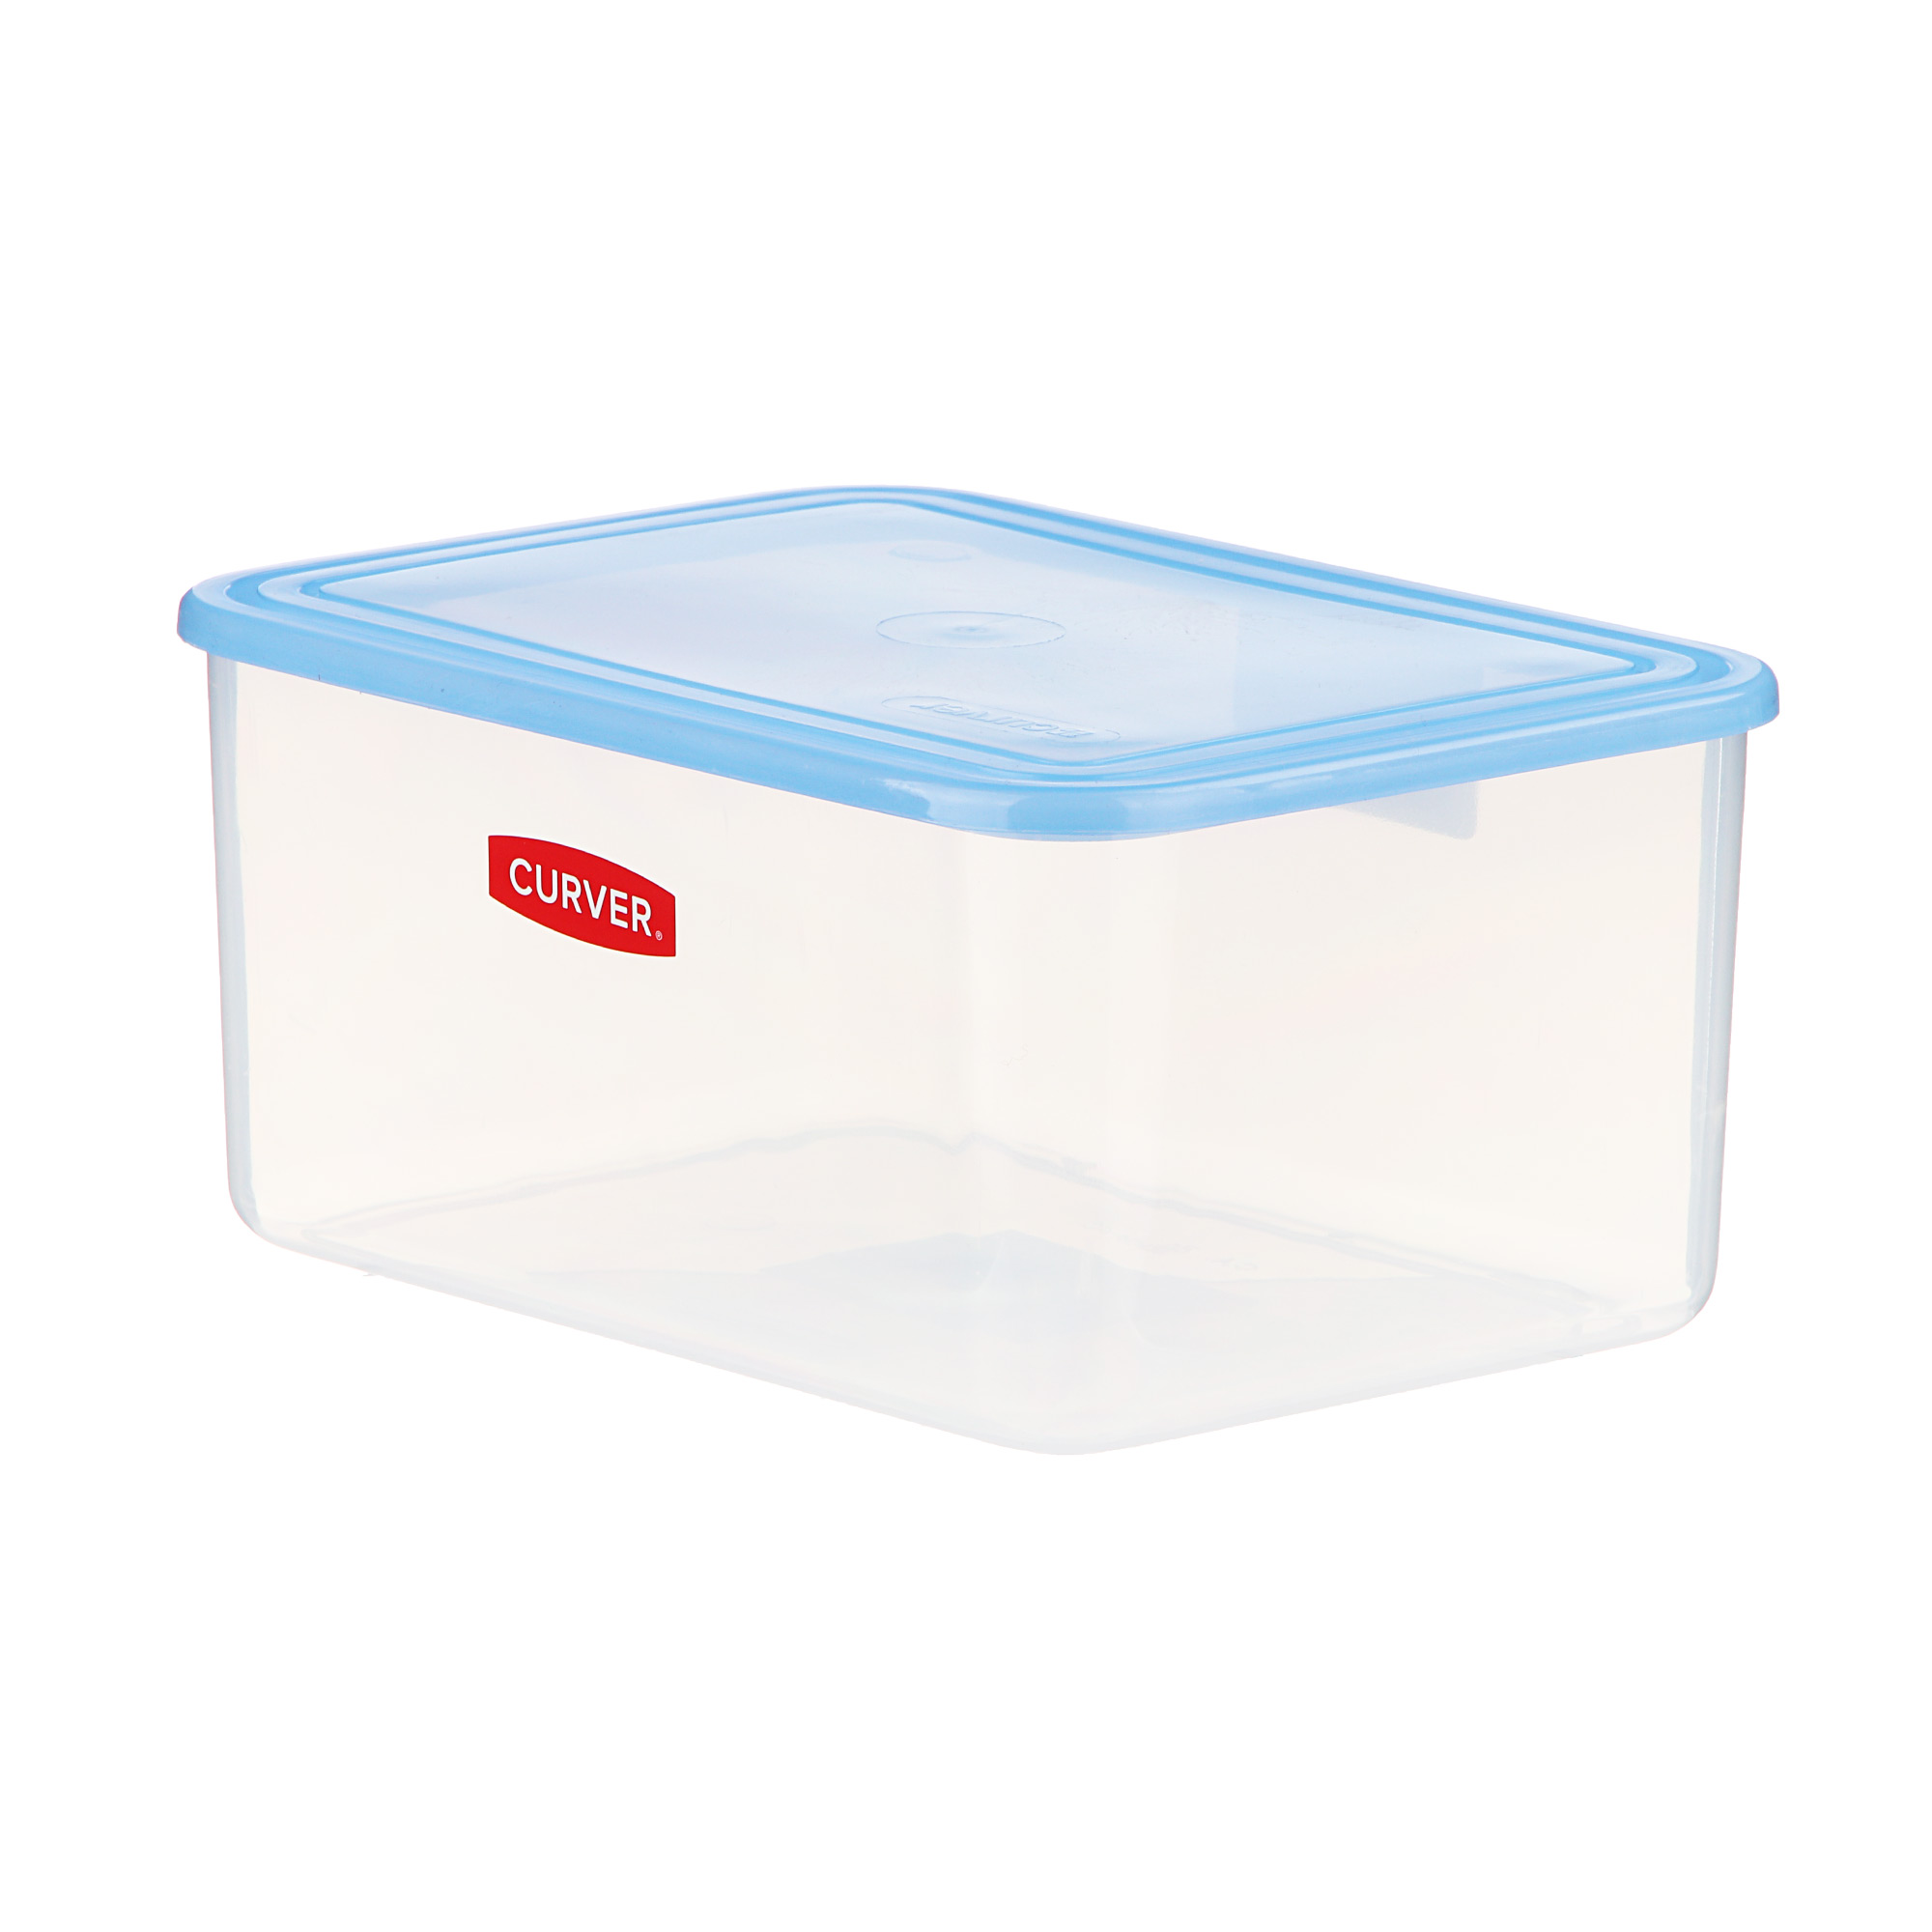 Контейнер Curver прямоугольный 3 л голубой контейнер для хранения и стерилизации детских сосок и пустышек синий